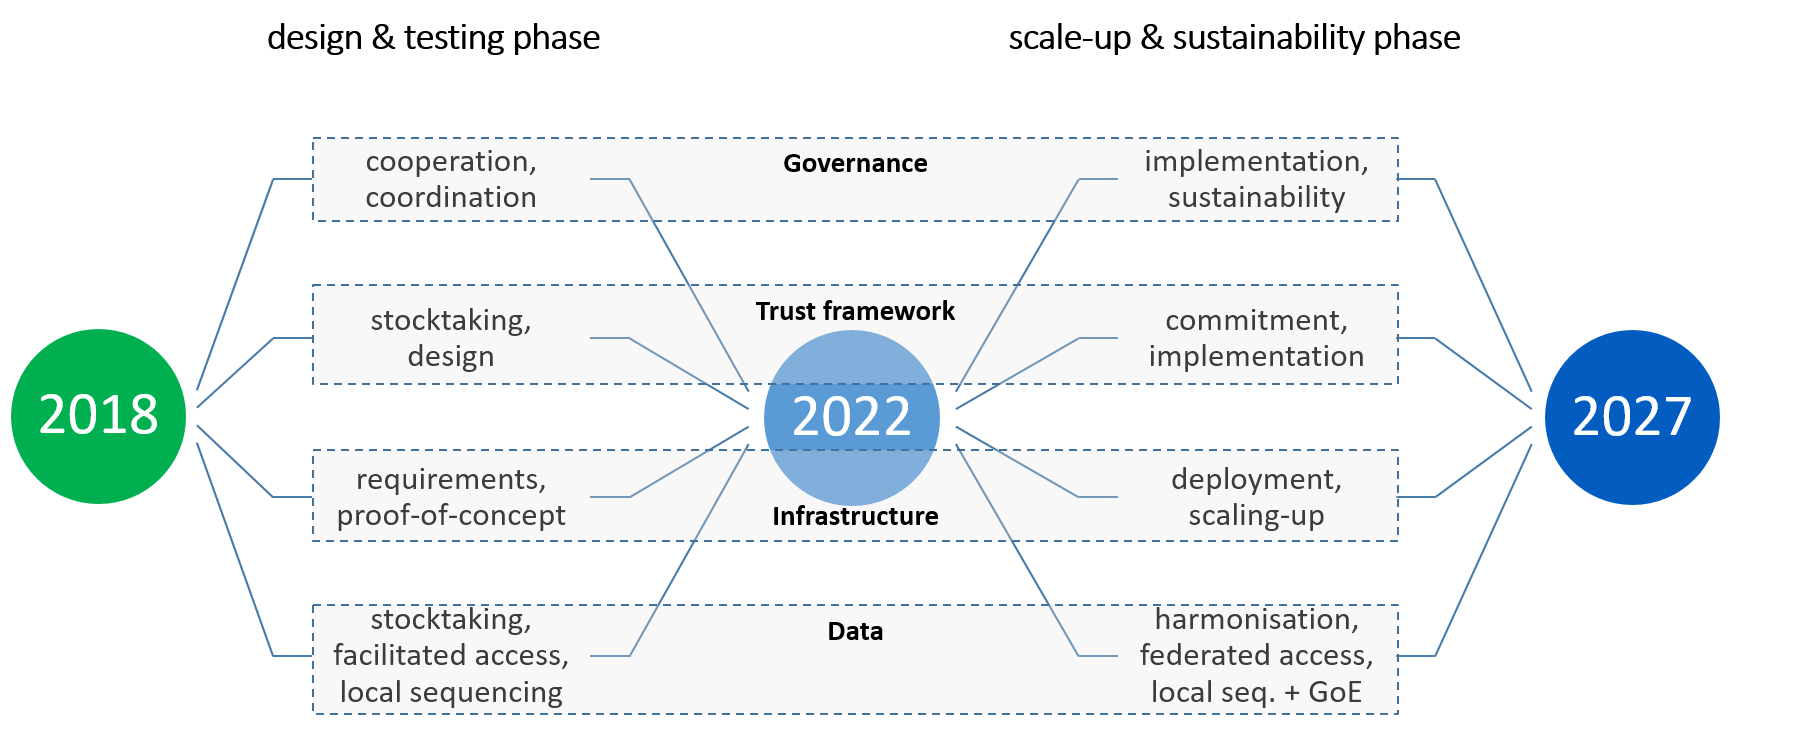 Izvajanje izjave 1+MG in časovnih načrtov za obdobje 2018–2027. Časovnica je razdeljena na dve glavni fazi: Faza načrtovanja in ojačevanja: Ta faza poteka od leta 2018 do leta 2022. Scale-Up & Trajnostna faza: Ta faza traja od leta 2022 do leta 2027. Poudarjena so ključna prednostna področja, ki vključujejo: Upravljanje: V fazi zasnove in preskušanja je poudarek na sodelovanju in usklajevanju. V fazi širitve in trajnosti je poudarek na izvajanju in trajnosti. Okvir zaupanja: Na začetku sta bila opravljena pregled stanja in zasnova v zvezi z okvirom zaupanja. Nato je sledila faza zavezanosti in izvajanja. Infrastruktura: V zgodnjih fazah se obravnavajo zahteve in dokaz koncepta. Z napredovanjem projekta postajata uvajanje in širitev ključnega pomena. Podatki: Na začetku je bil opravljen pregled stanja, olajšan dostop in lokalno sekvenciranje. Kasneje pridejo v poštev harmonizacija, zvezni dostop in lokalno sekvenciranje z globalno perspektivo. V časovnici so poudarjena leta 2018, 2022 in 2027.